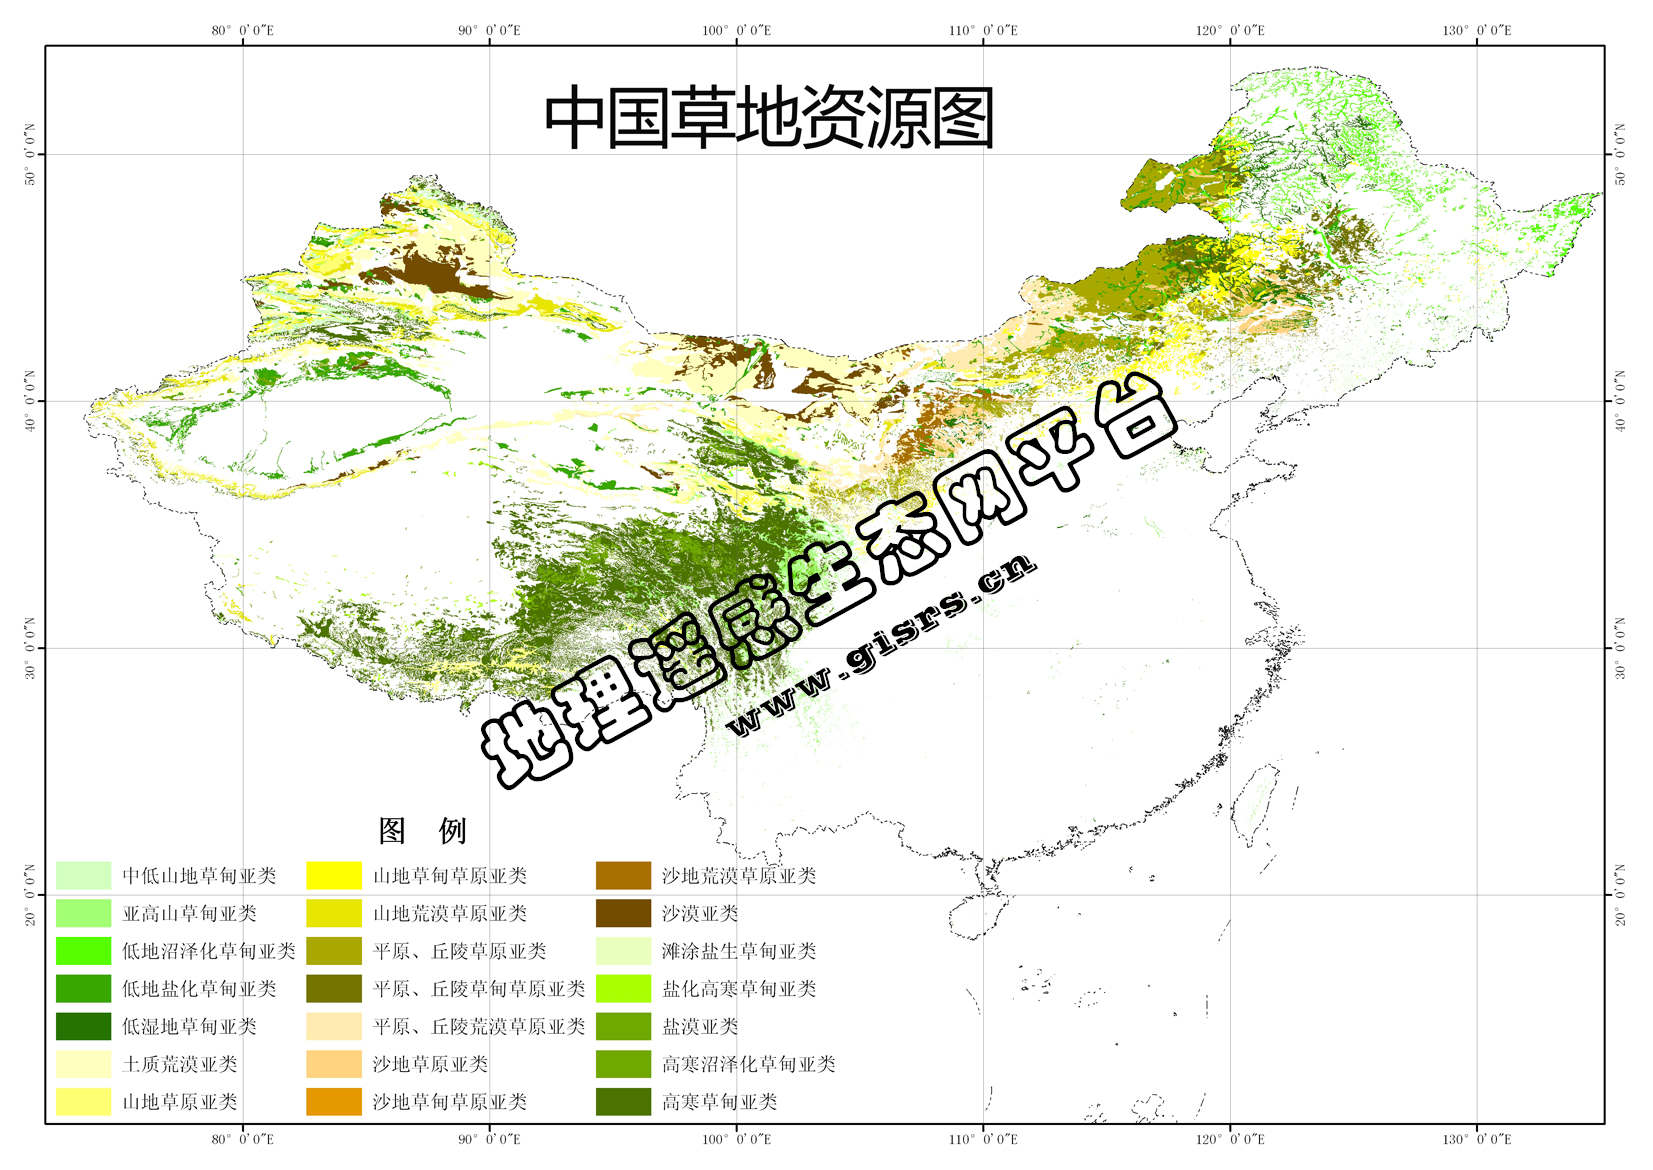 中国草地类型分布数据